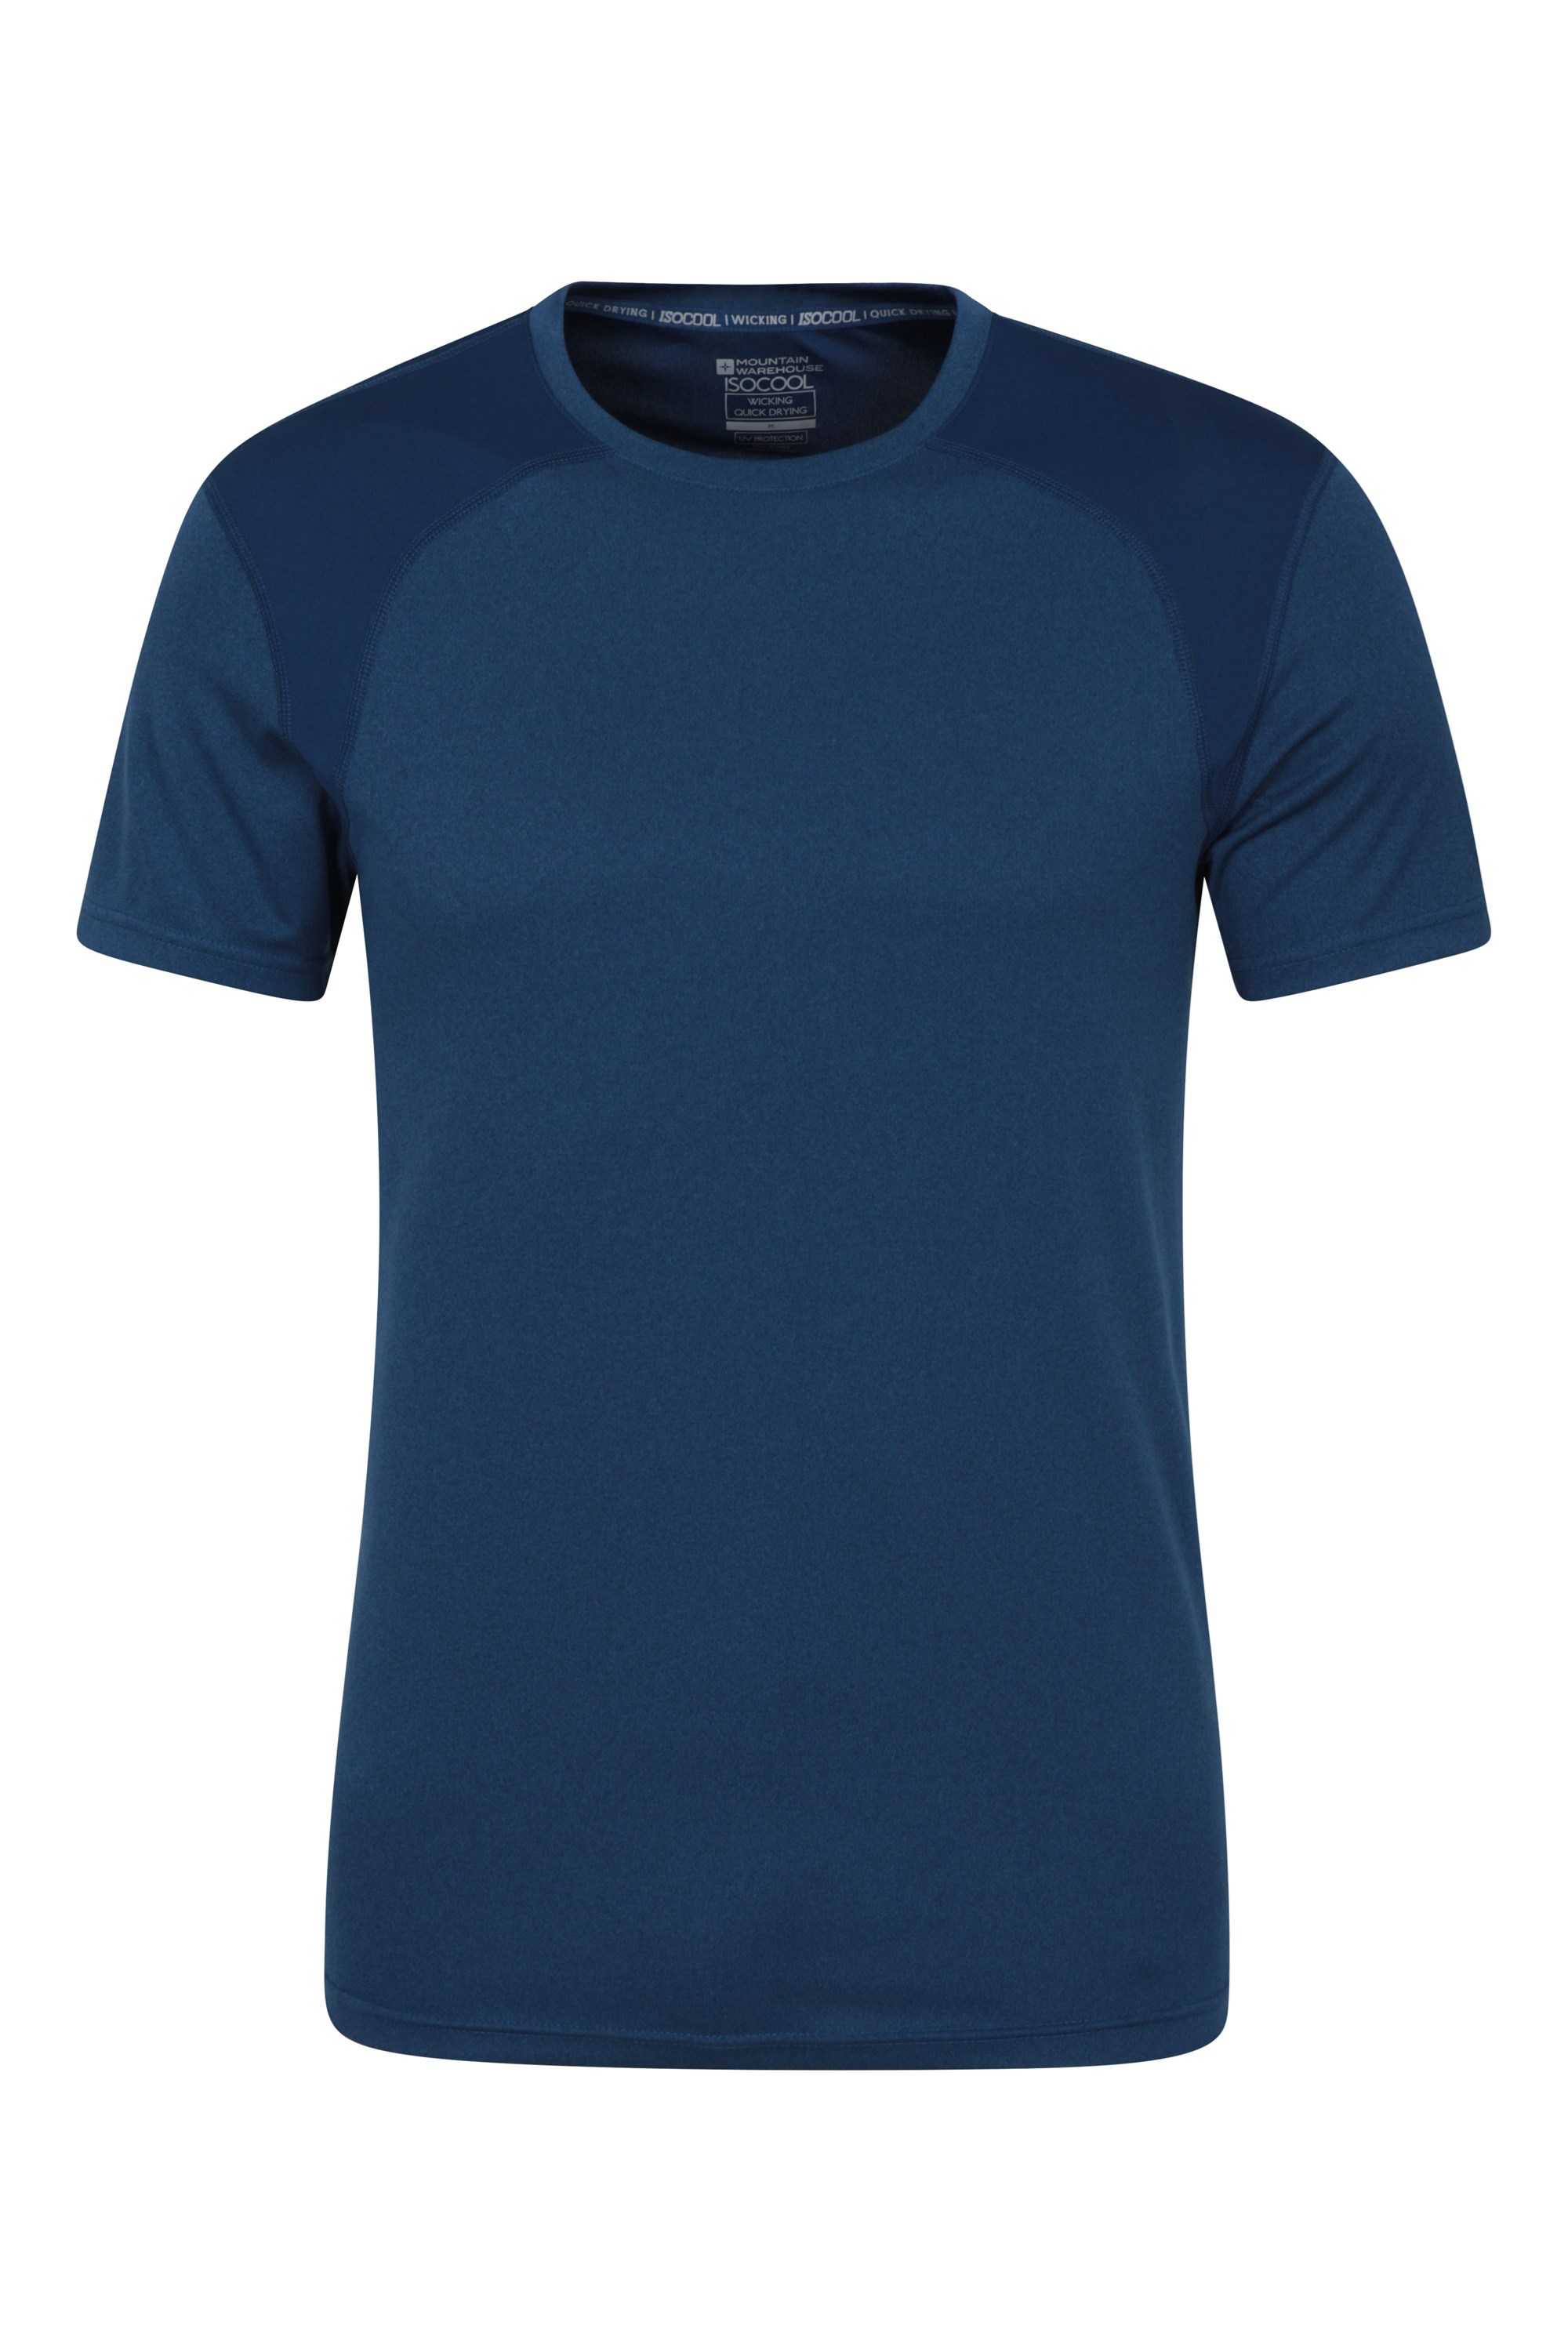 T-shirt Lunar IsoCool à empiècements homme - Bleu